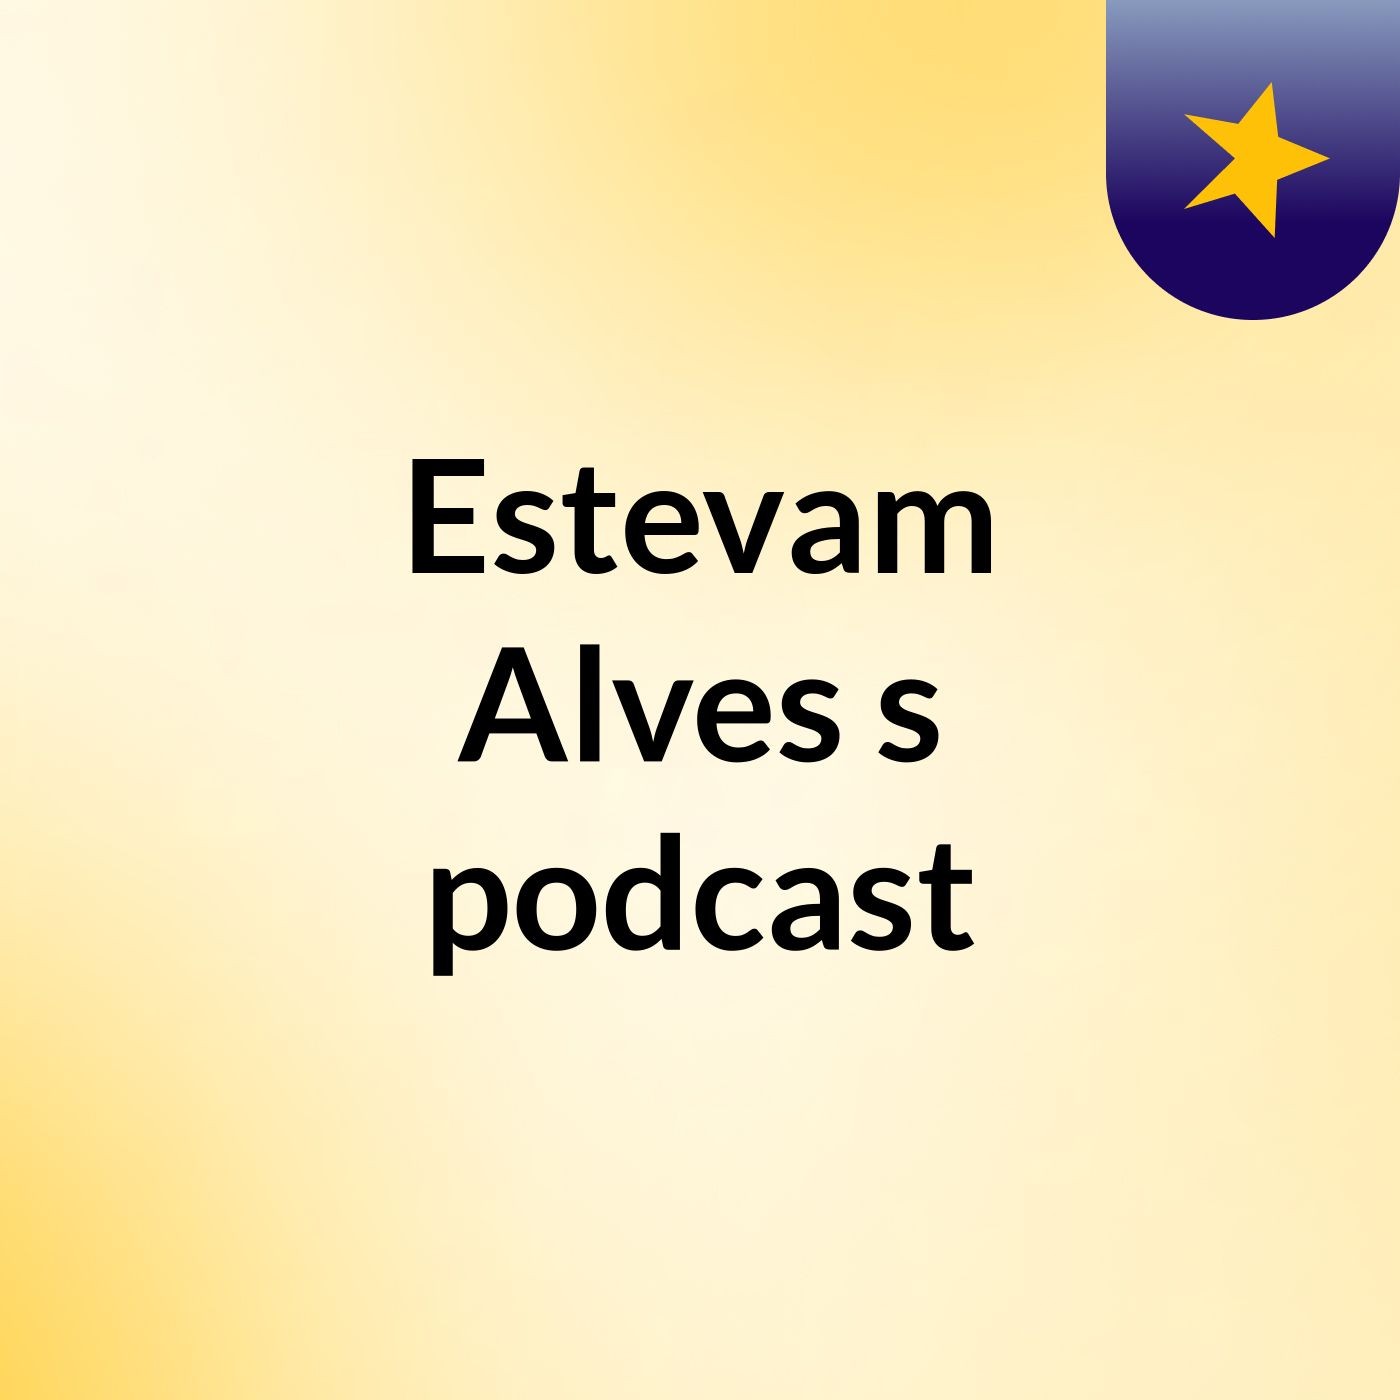 Estevam Alves's podcast